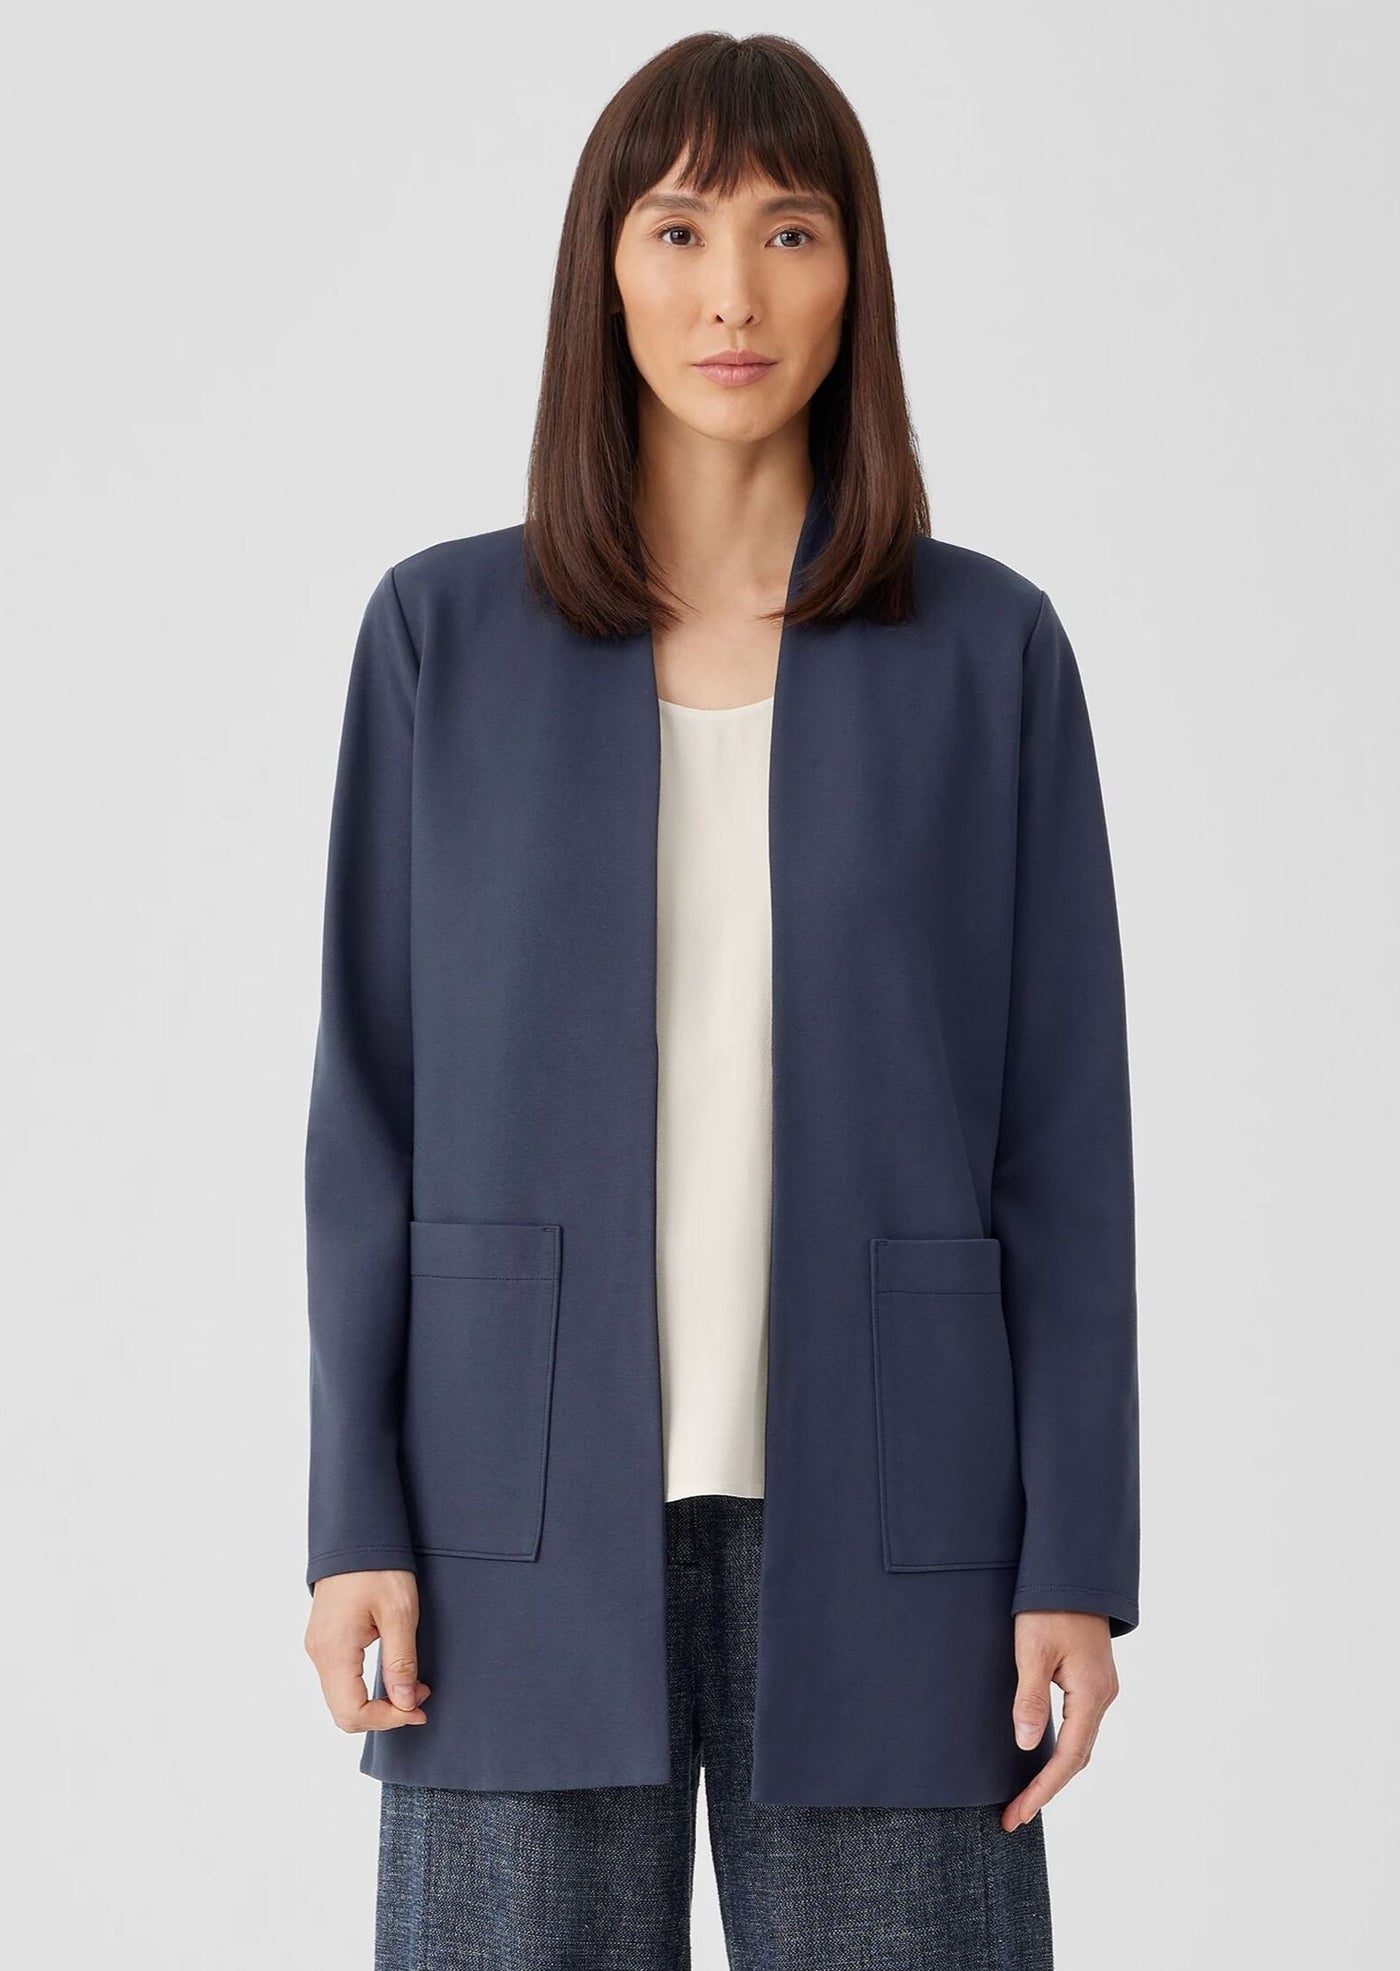 Eileen Fisher - High Collar Long Jacket